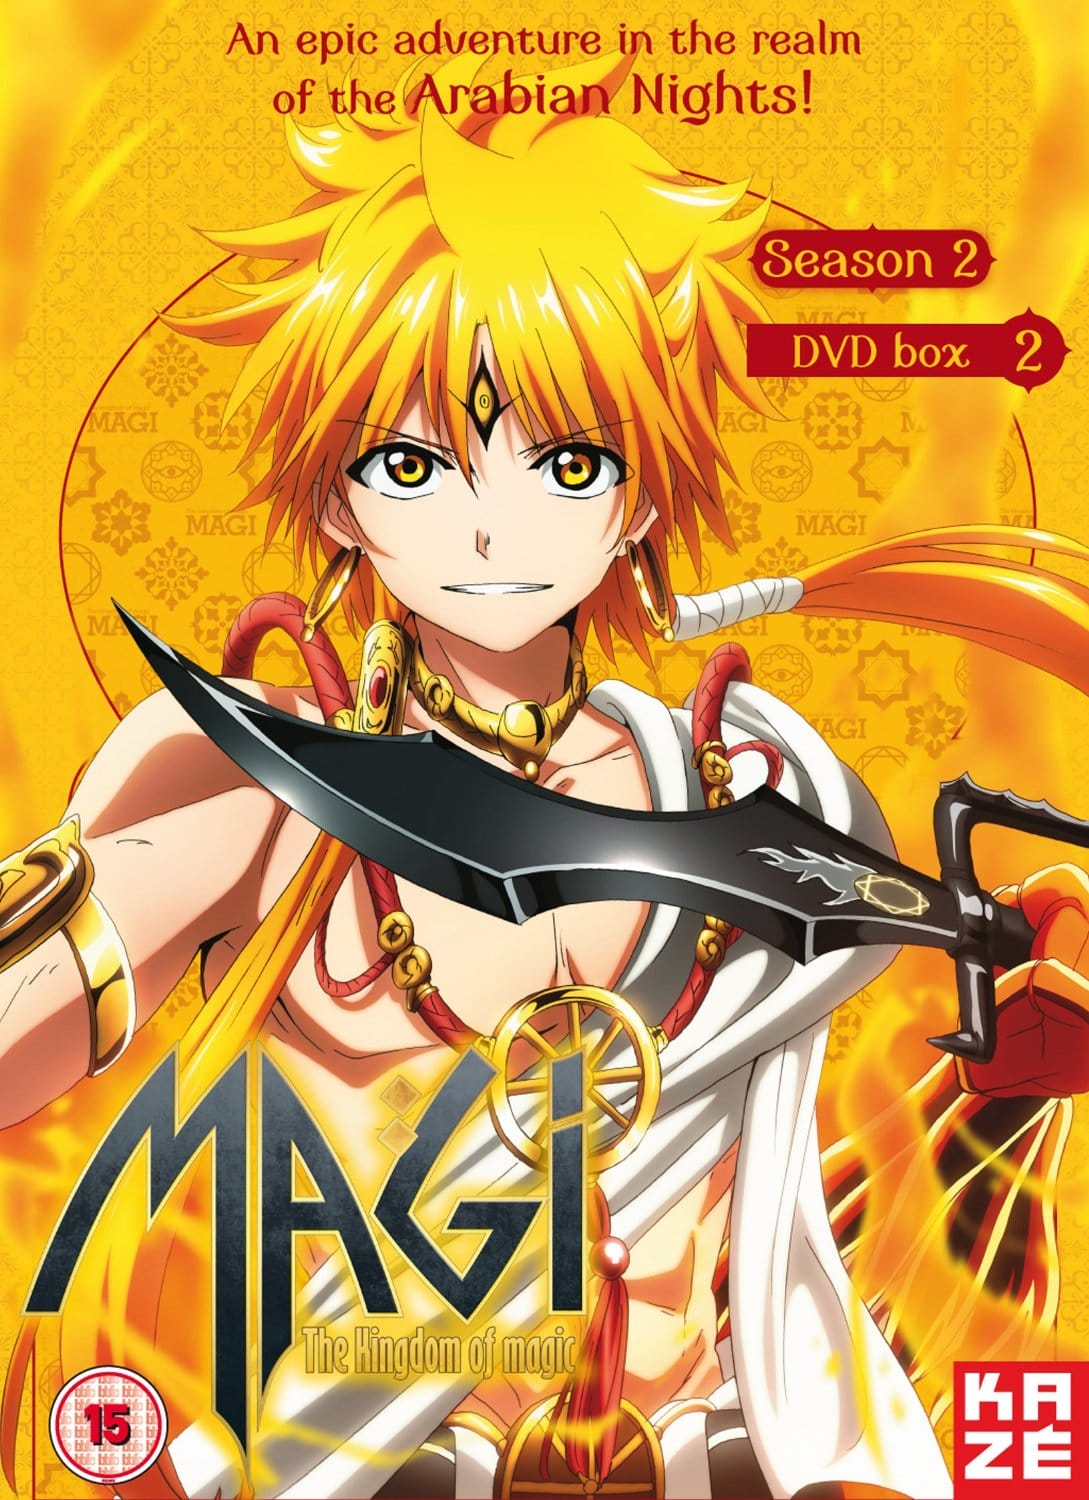 Magi: The Kingdom of Magic Episode 2